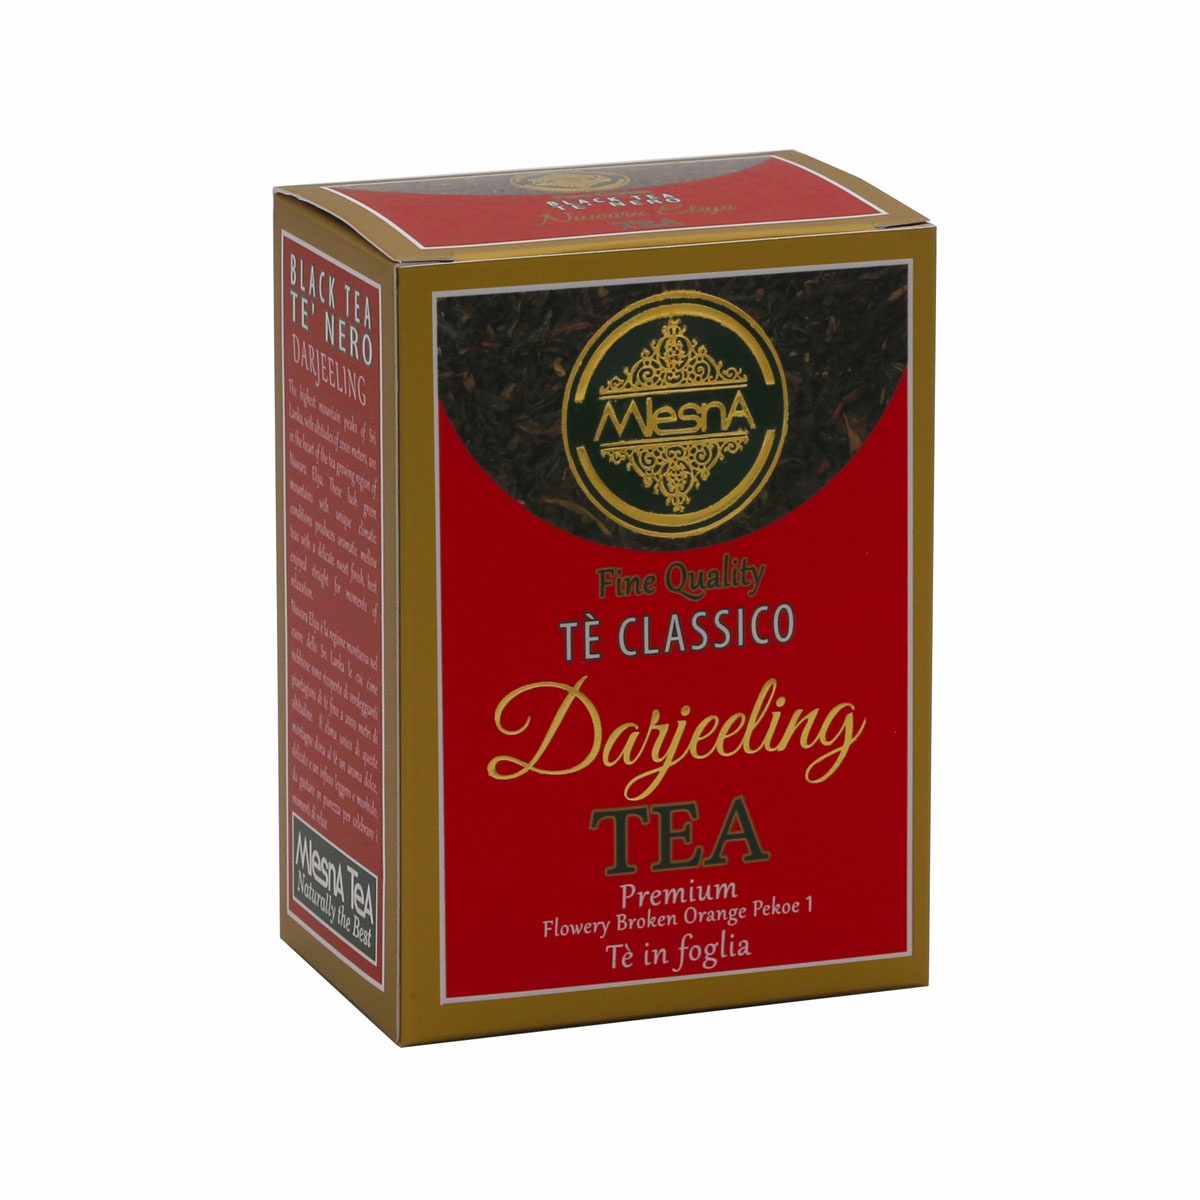 Čaje Mlesna Černý čaj nejvyšší kvality z nejznámější plantáže na světě MLESNA (Ceylon) Ltd. pravý čaj z Cejlonu